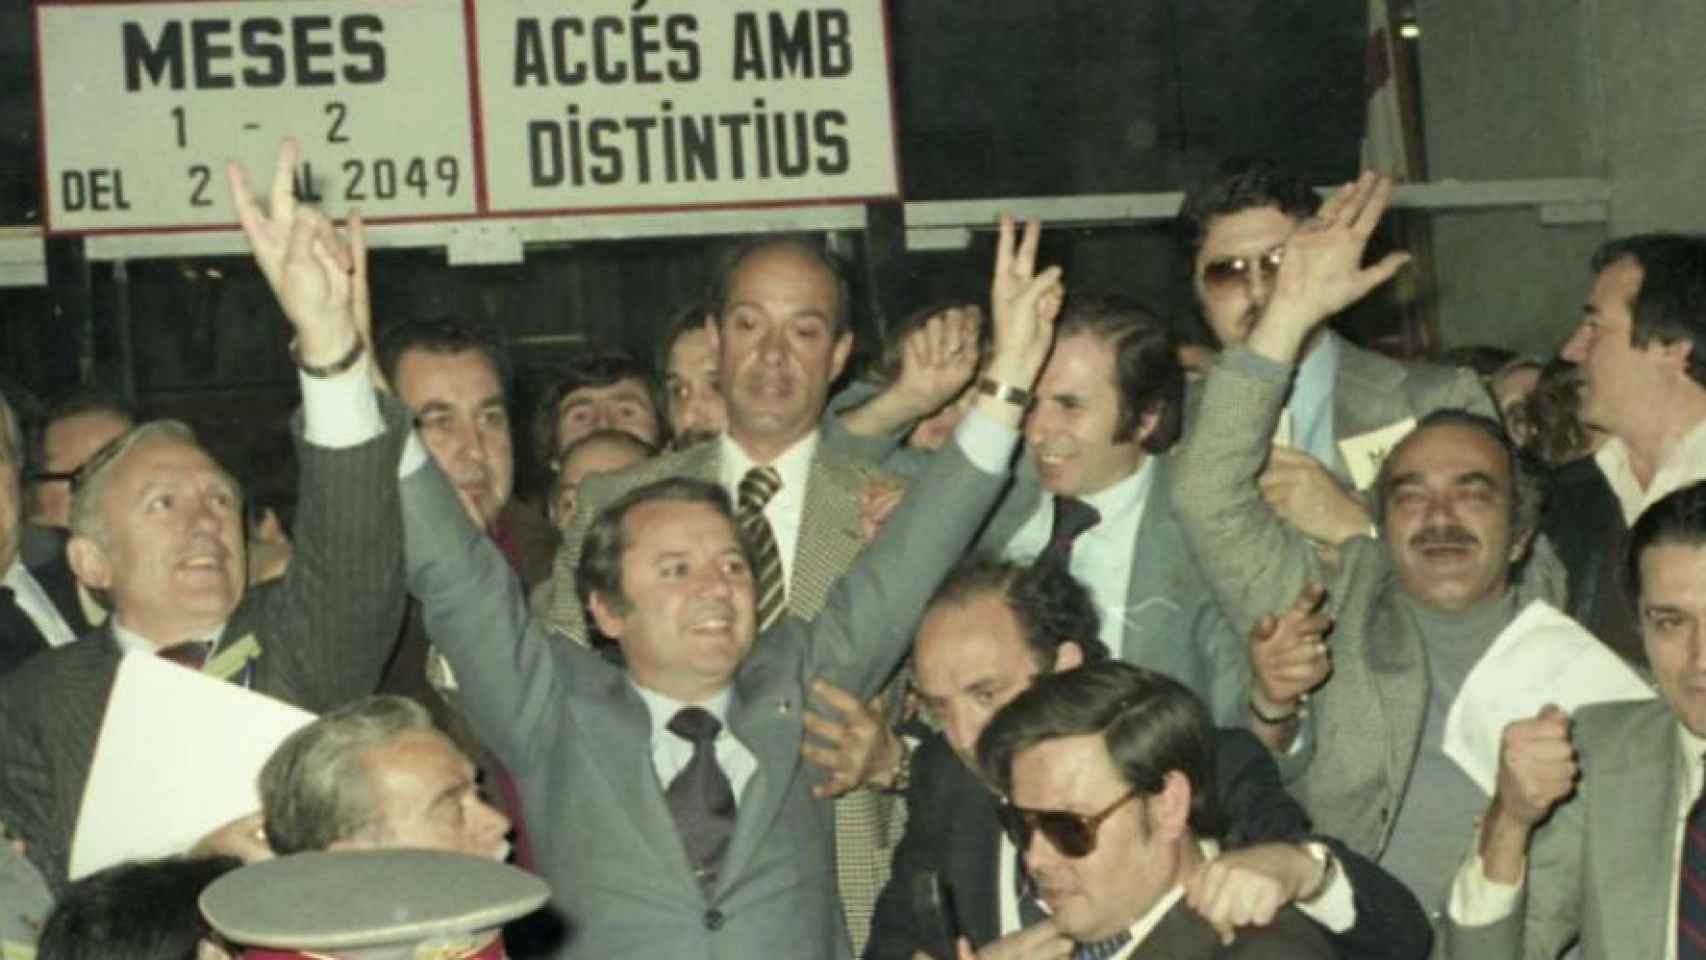 Josep Lluís Núñez celebra su victoria en las elecciones a la presidencia del Barça de 1978